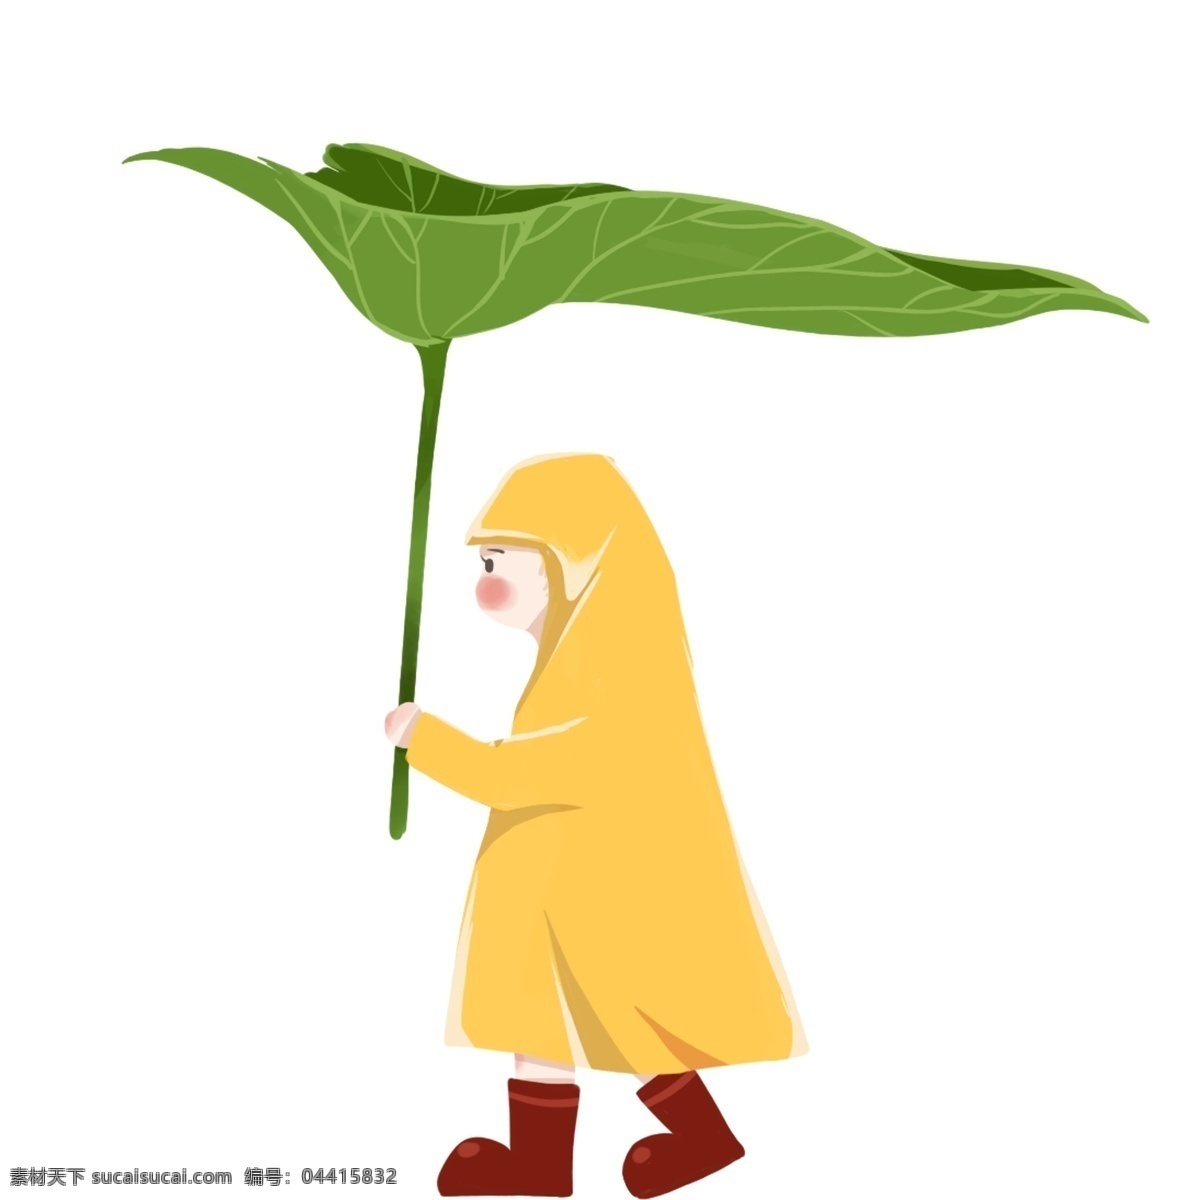 荷叶 人物 图案 元素 卡通 创意 简约 荷叶雨伞 设计元素 元素装饰 装饰图案 psd元素 荷叶当雨伞